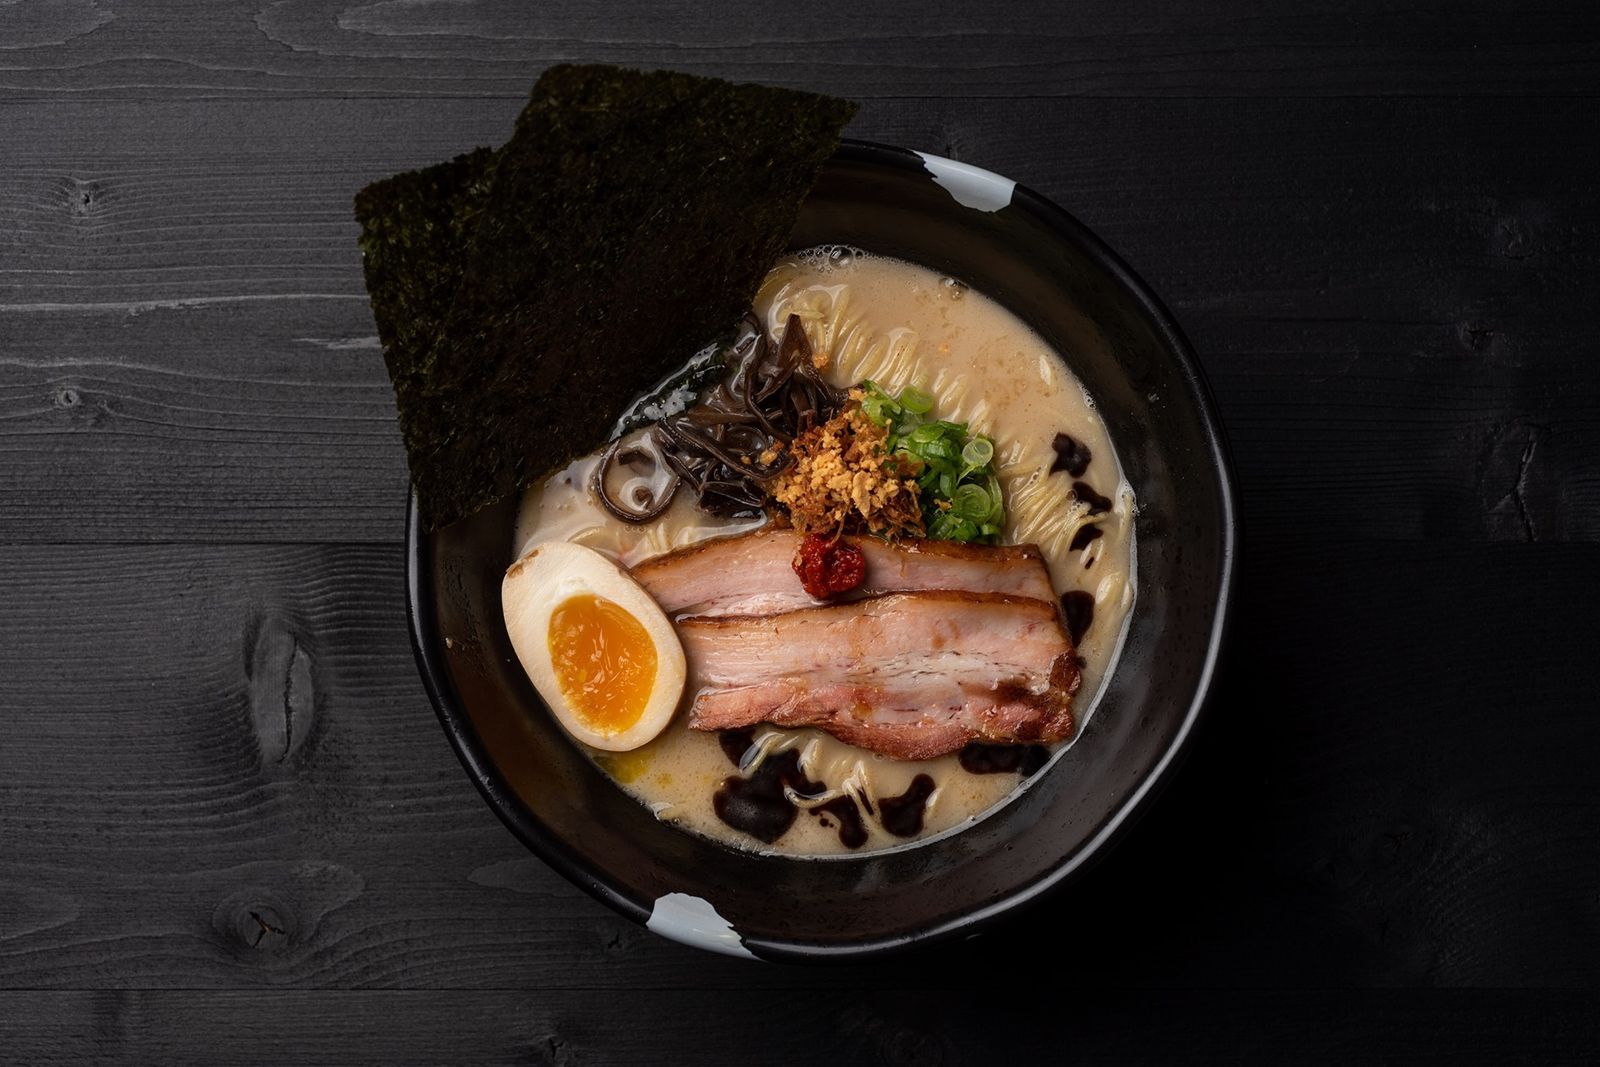 JINYA Ramen Bar Introduces Traditional Japanese Flavors to South Carolina